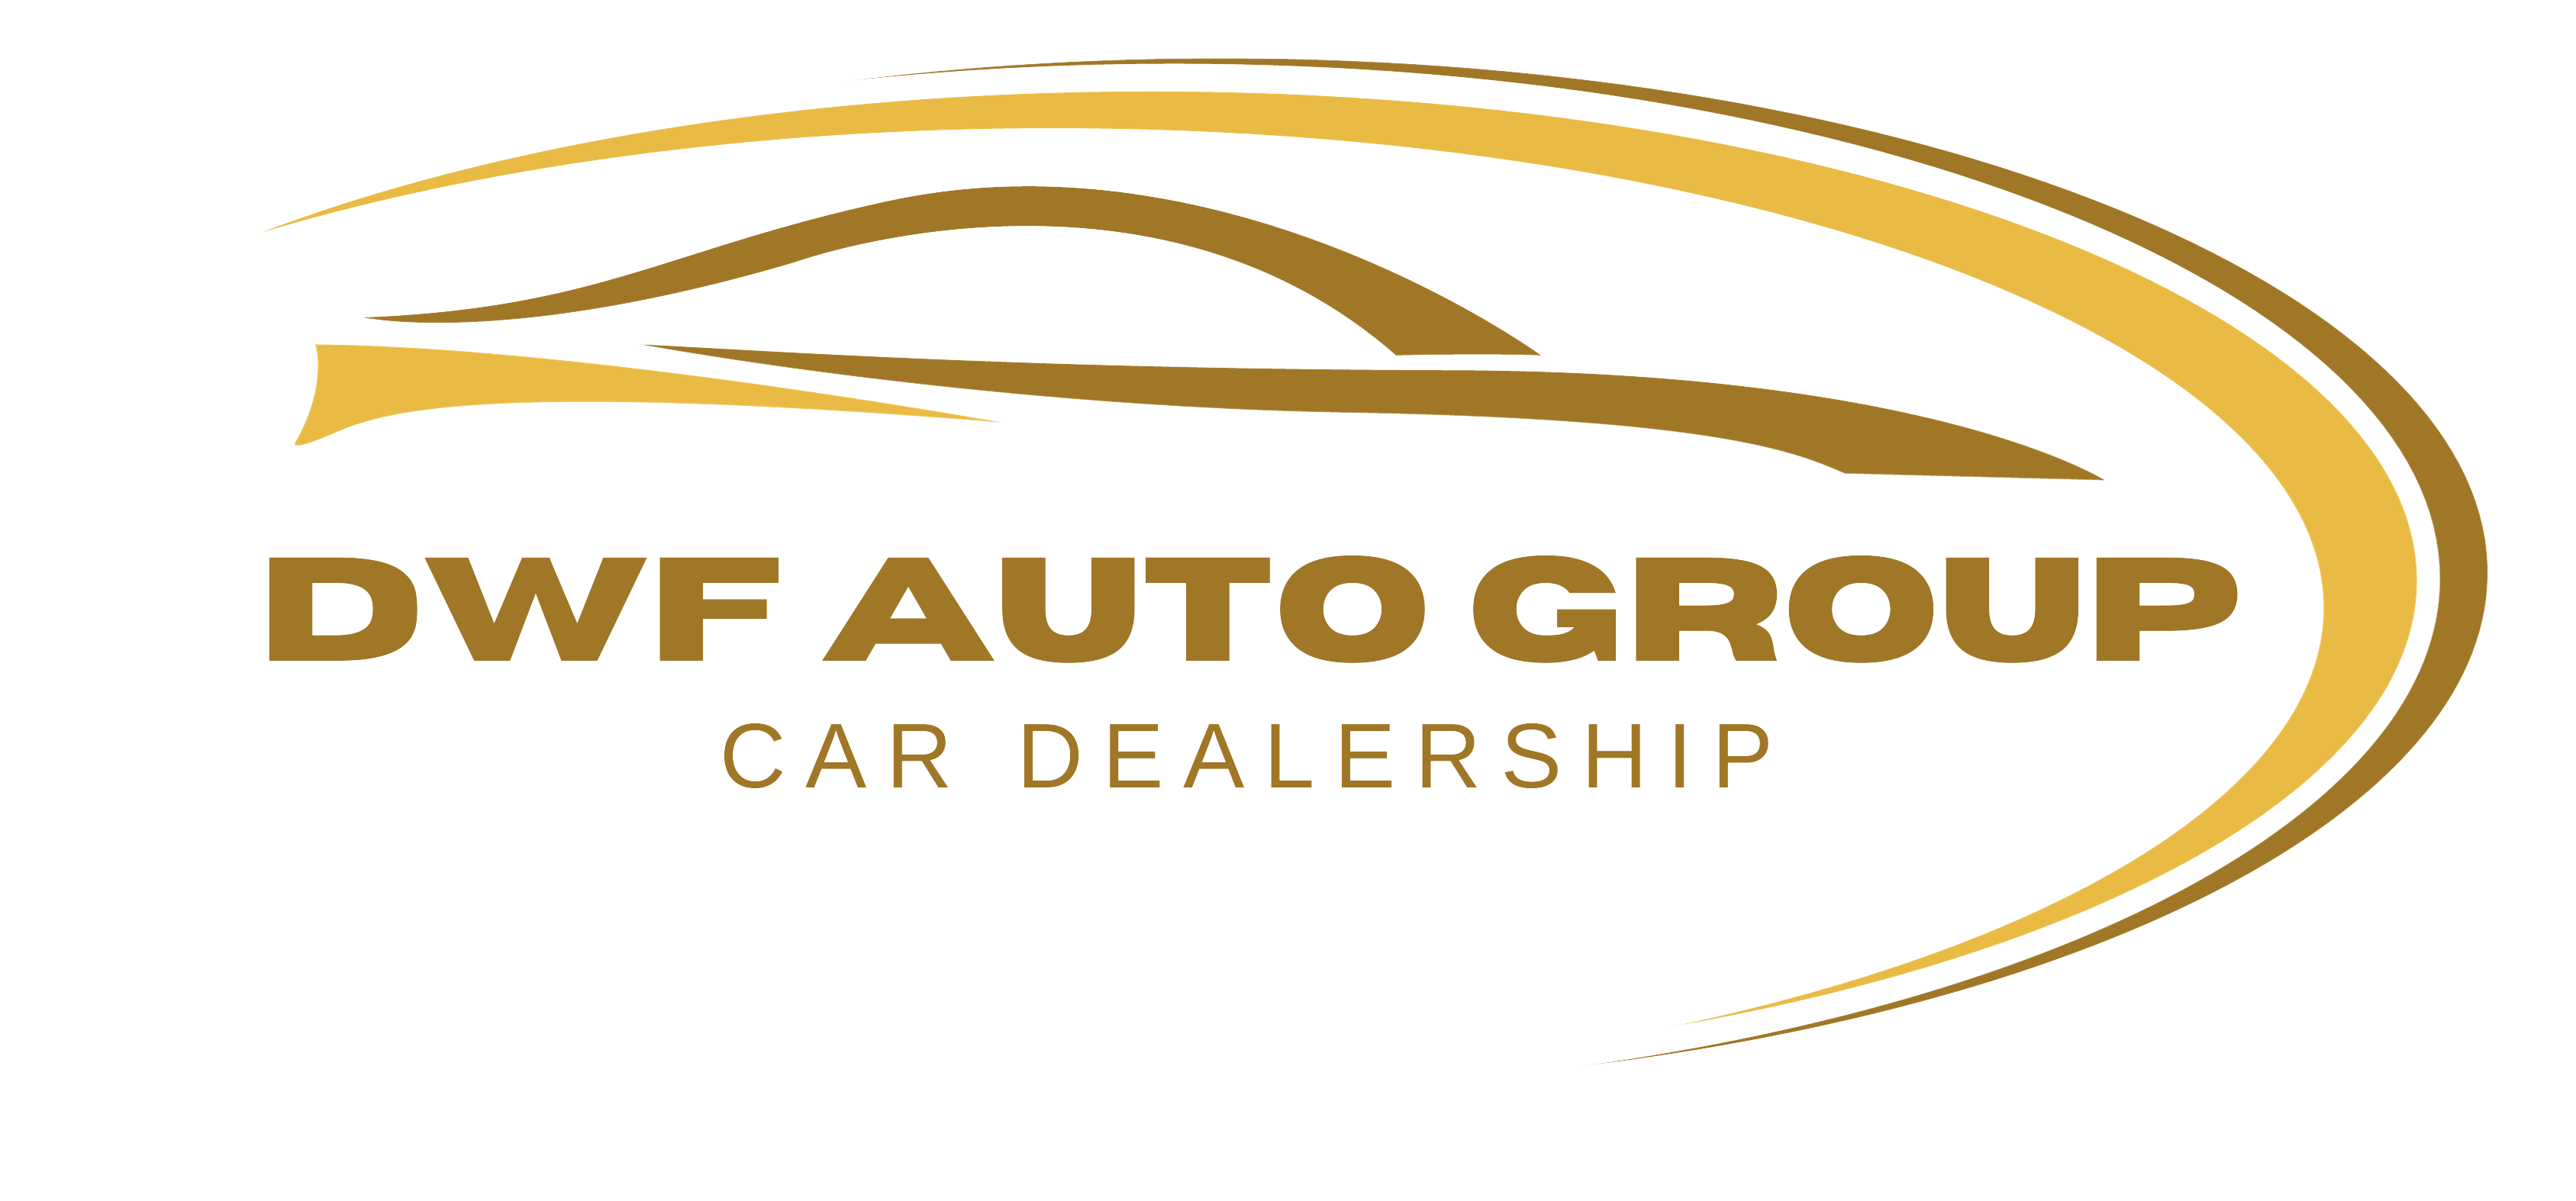 DWF AUTO GROUP LLC